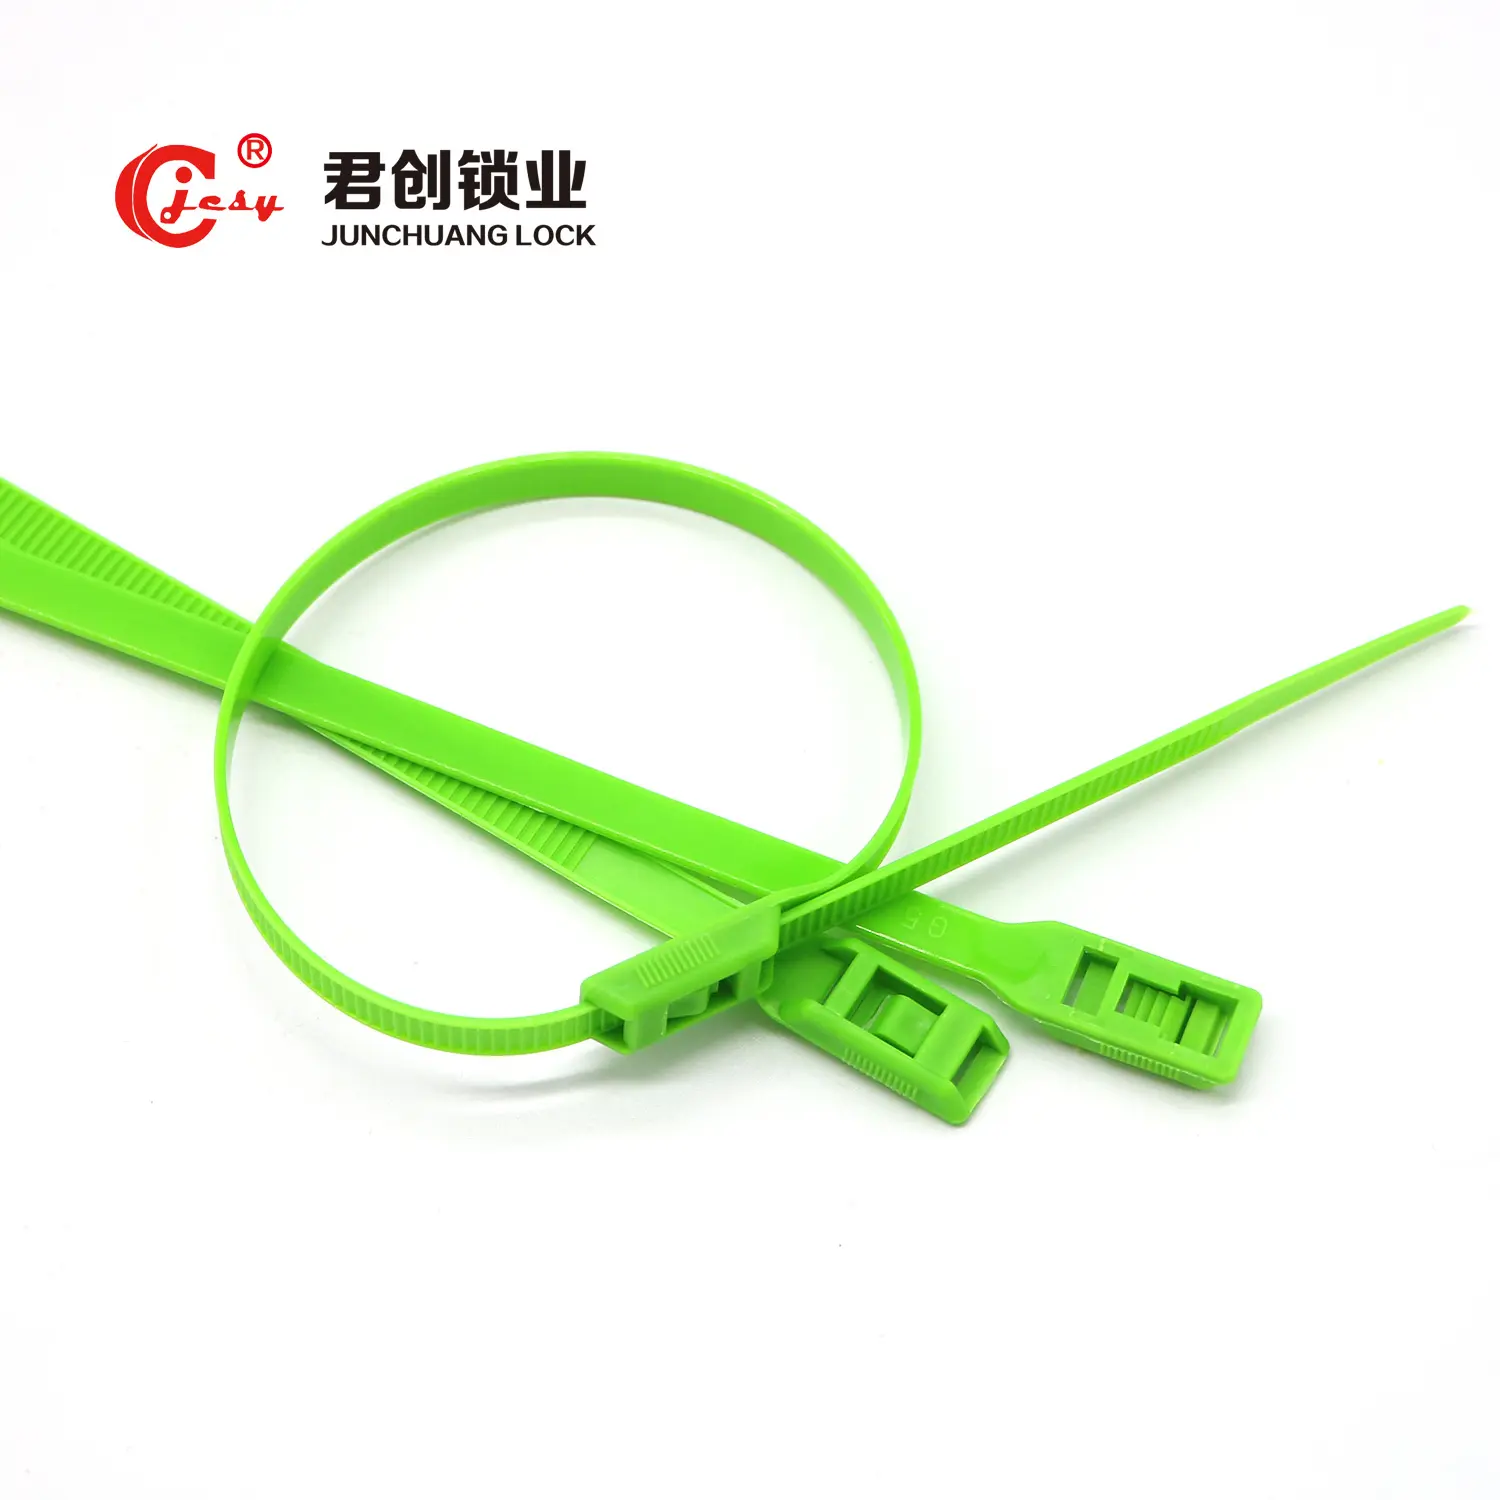 ניילון כבל קשרי עניבת מחיר לעטוף/Zip קשרי גודל/חשמלי חיווט לשימוש חוזר כבל עניבת סין